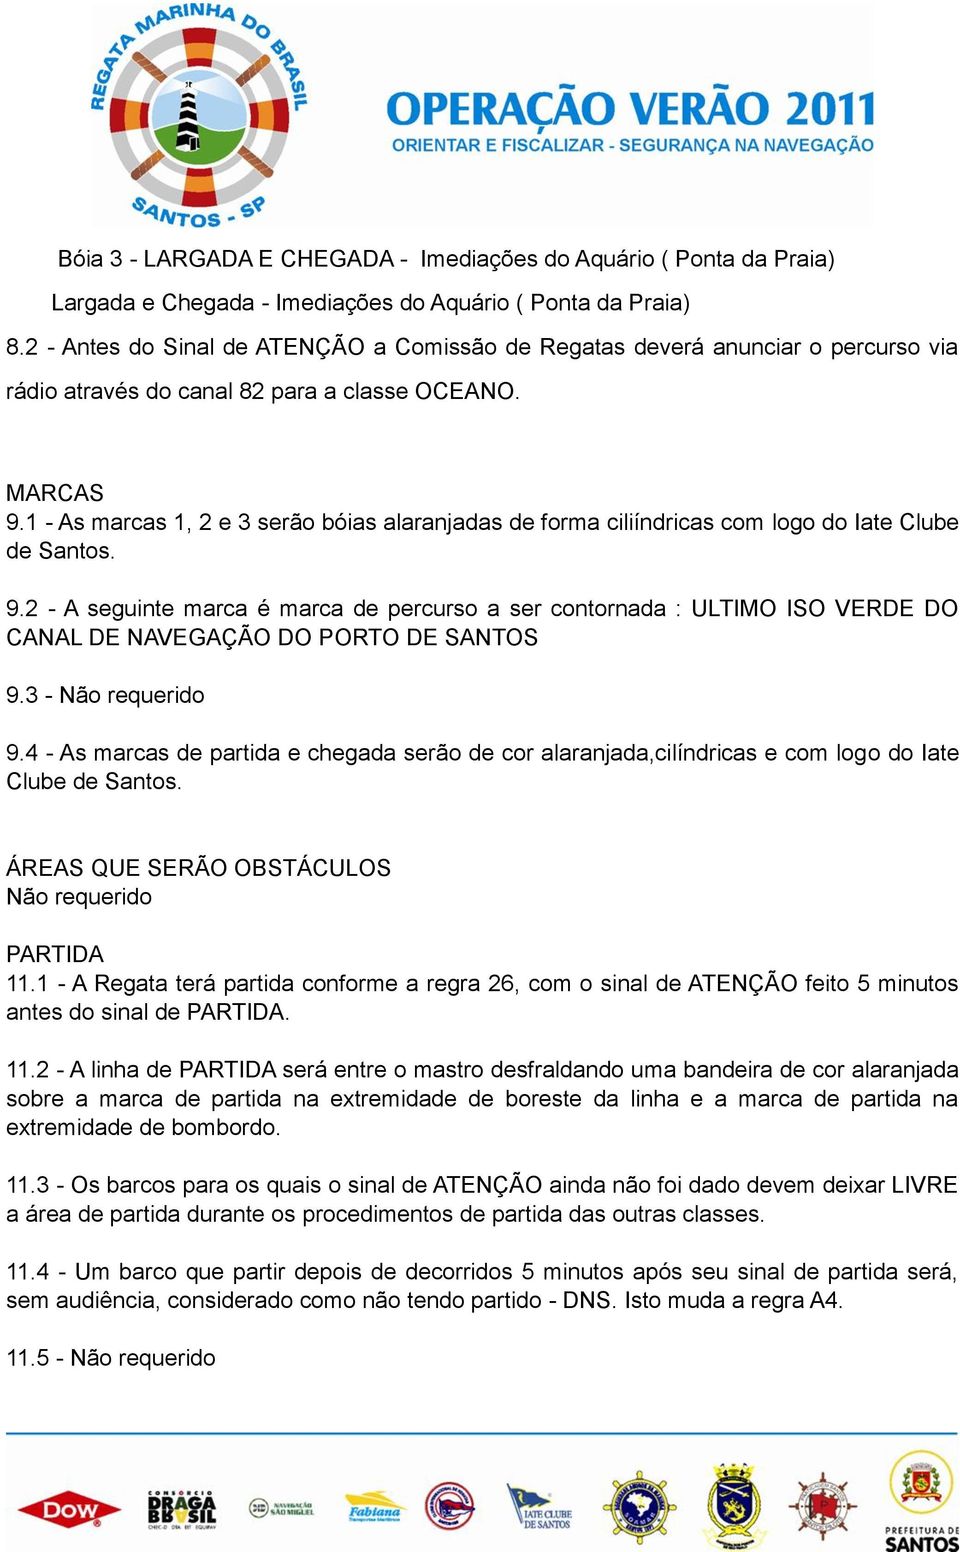 1 - As marcas 1, 2 e 3 serão bóias alaranjadas de forma ciliíndricas com logo do Iate Clube de Santos. 9.